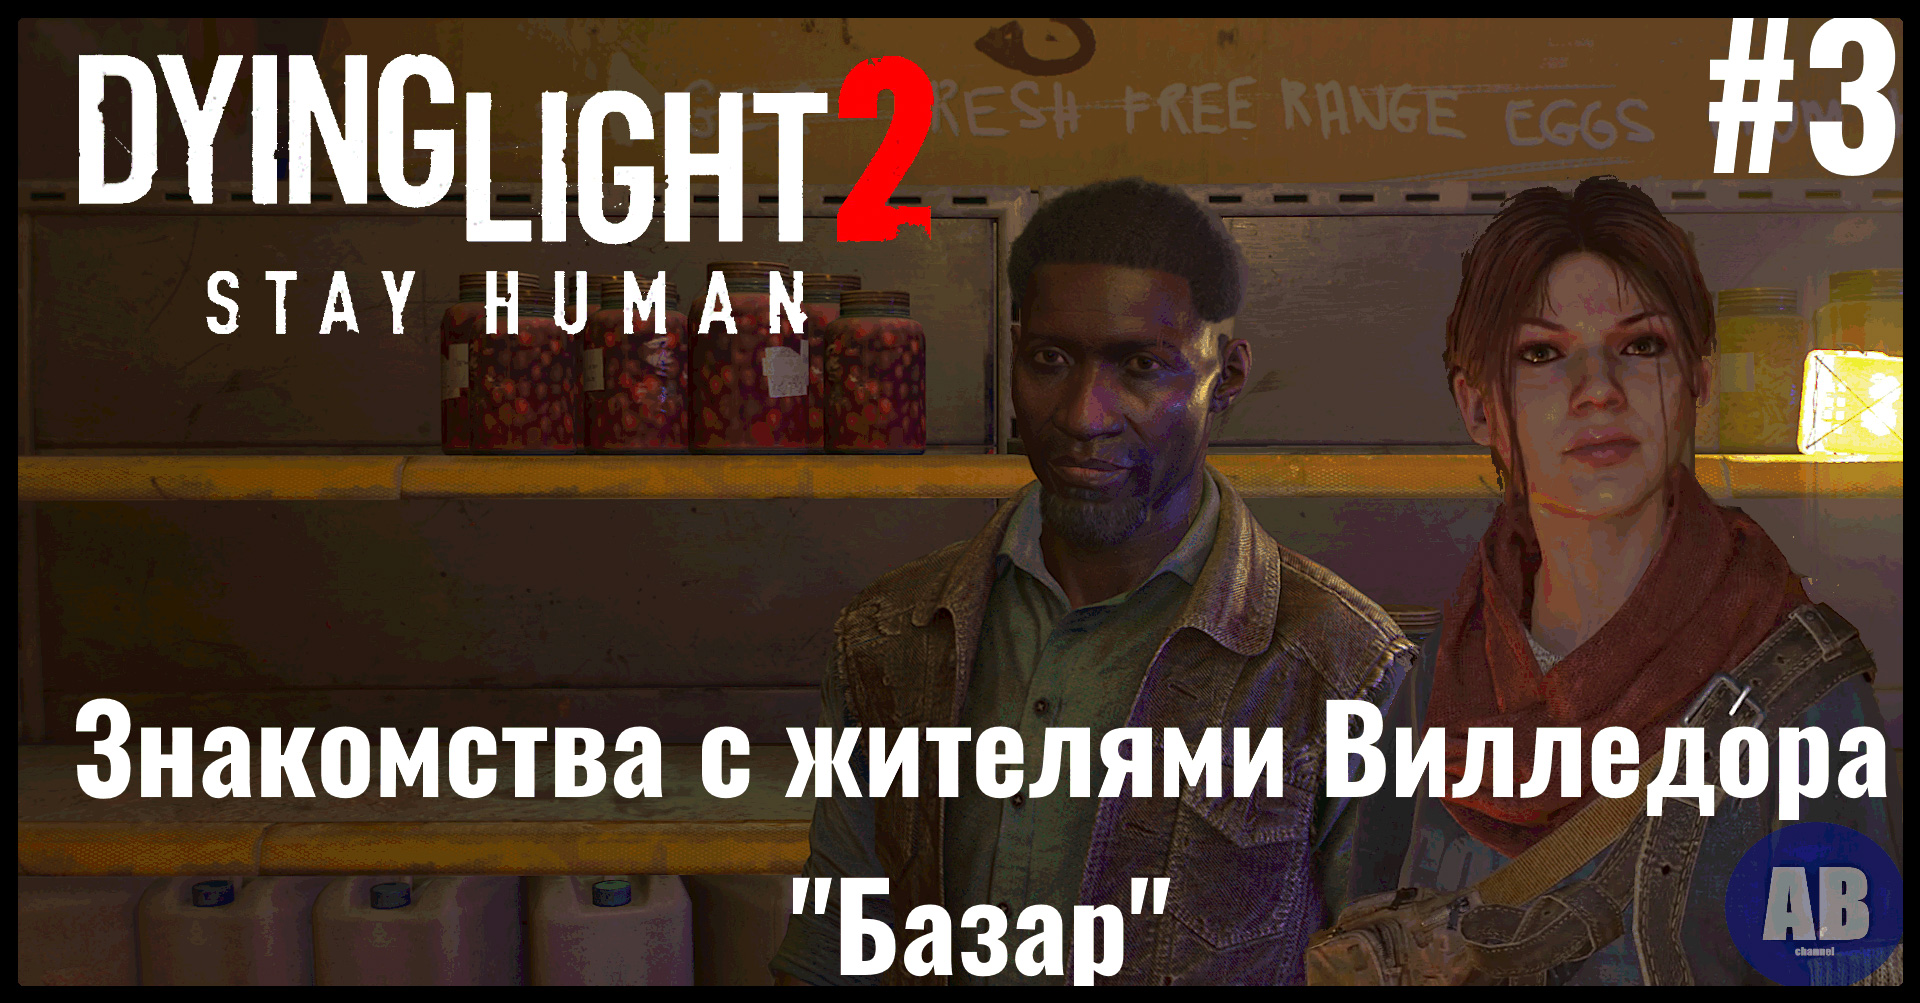 Поставь 2 часть человек. Dying Light 2: stay Human база ВГМ. Прохождение Dying Light 2: stay Human — часть 2.